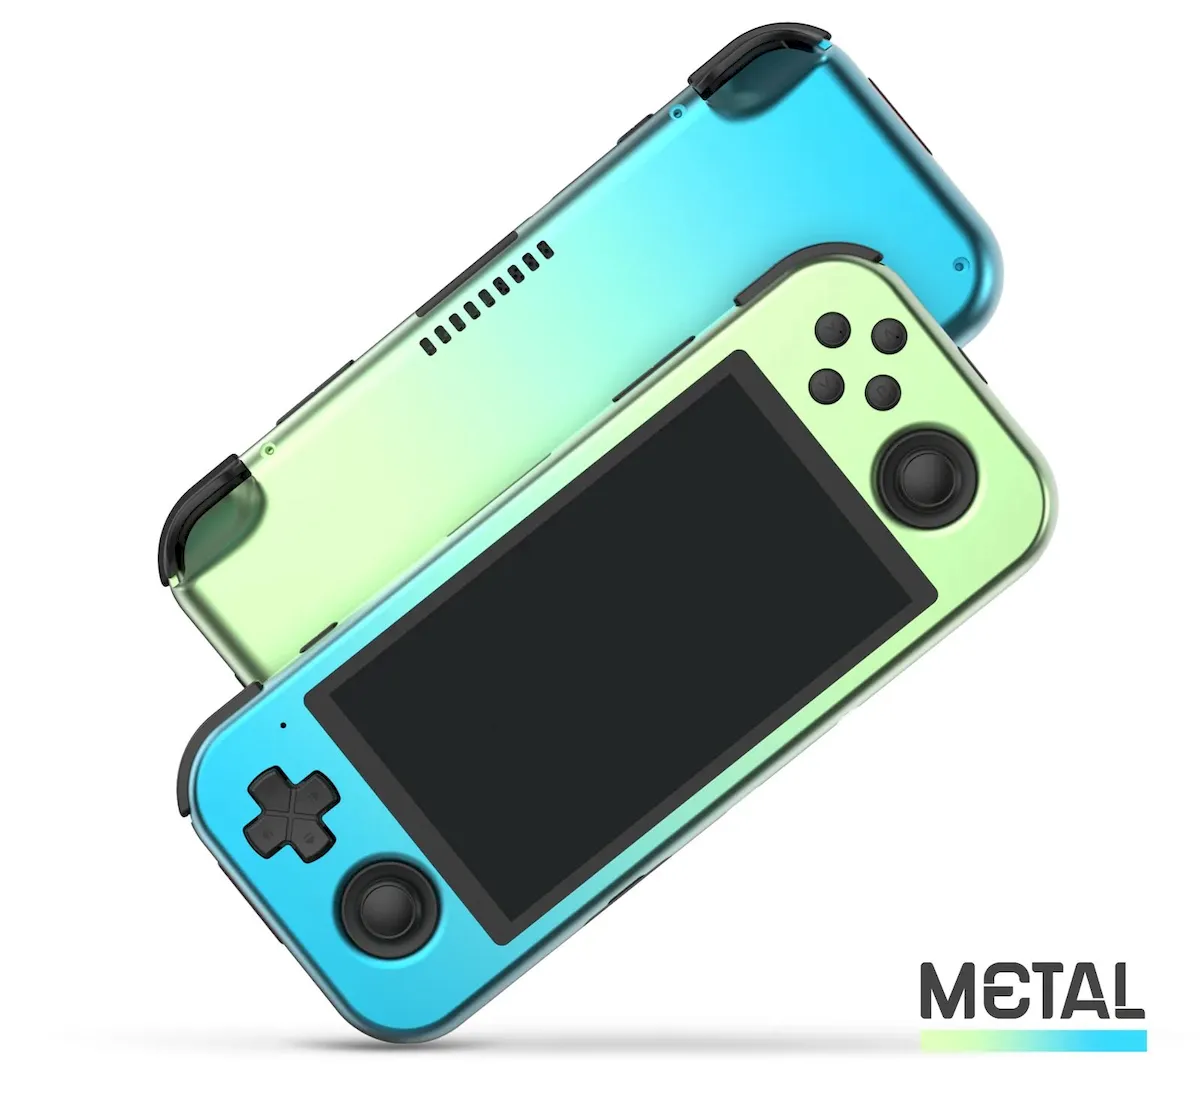 Pocket 3+ Metal Edition, um console com Android e corpo de metal